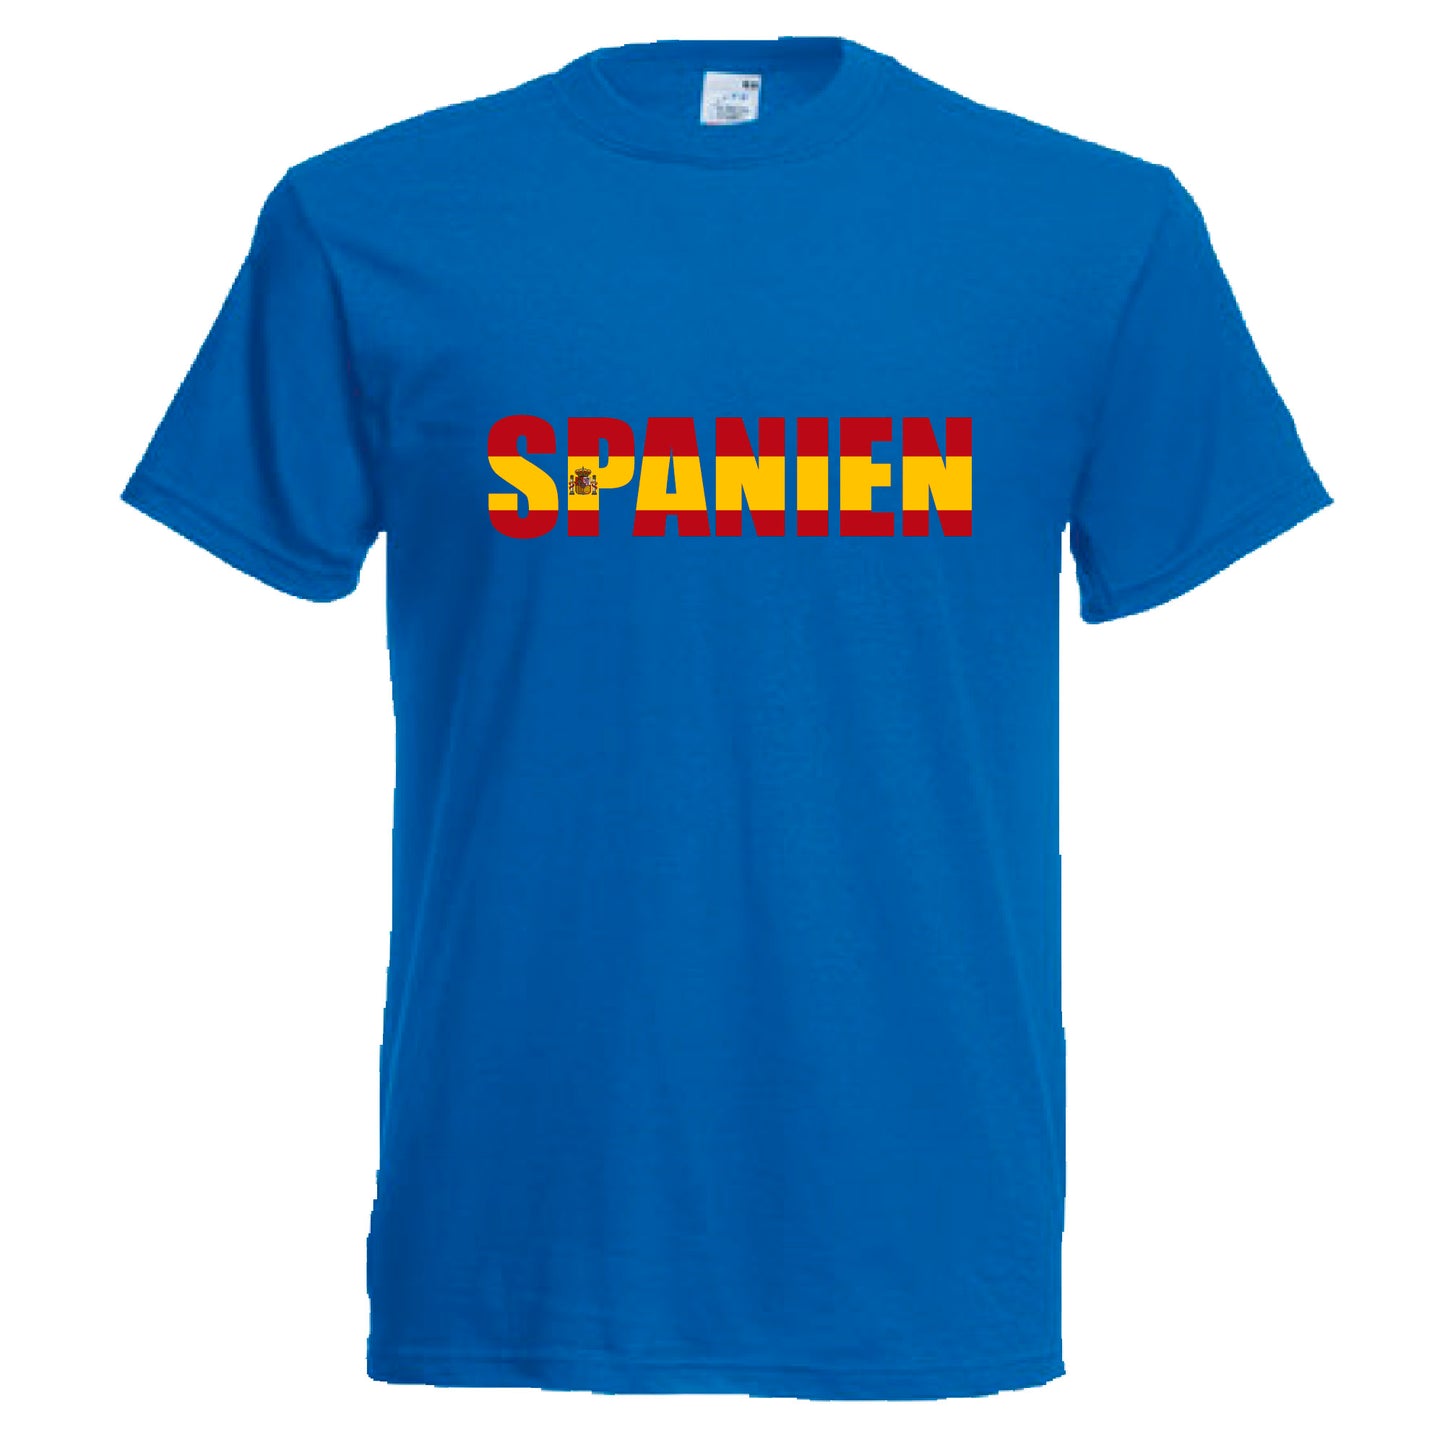 INDIGOS UG - T-Shirt Herren - Spanien - Schriftzug - Fussball